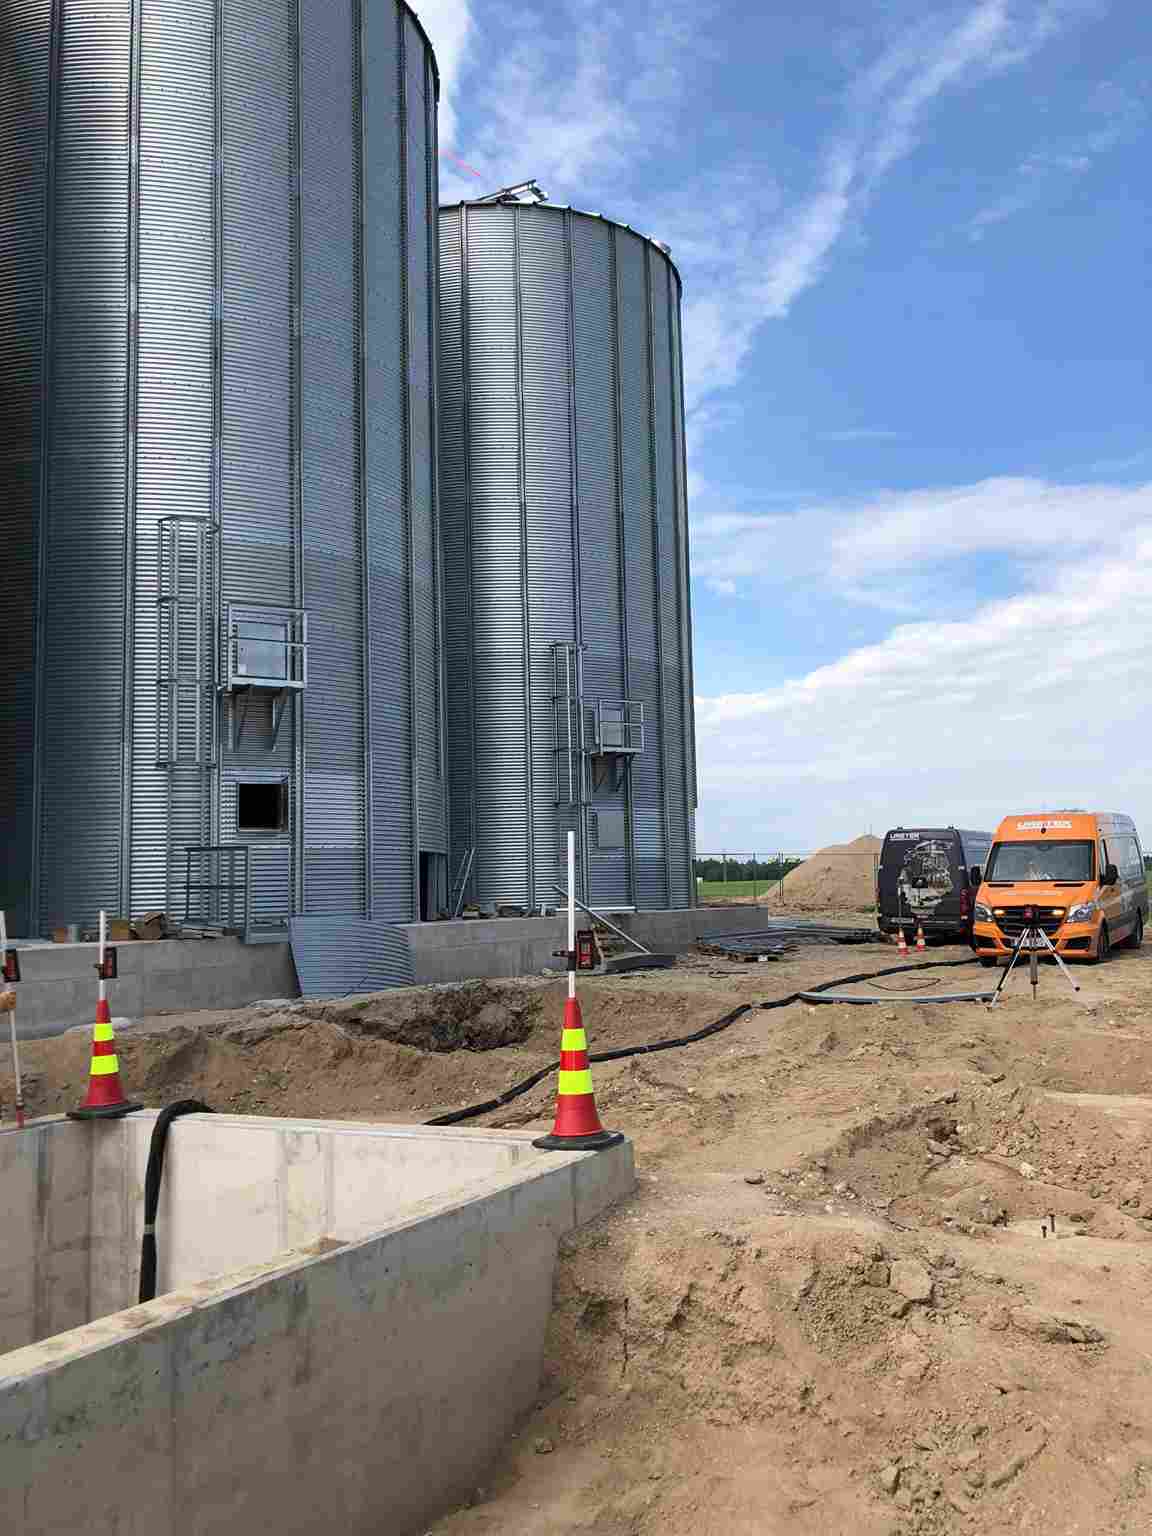 Подъем бетонных плит и уплотнение грунта на хранилище силосов Vao Agro